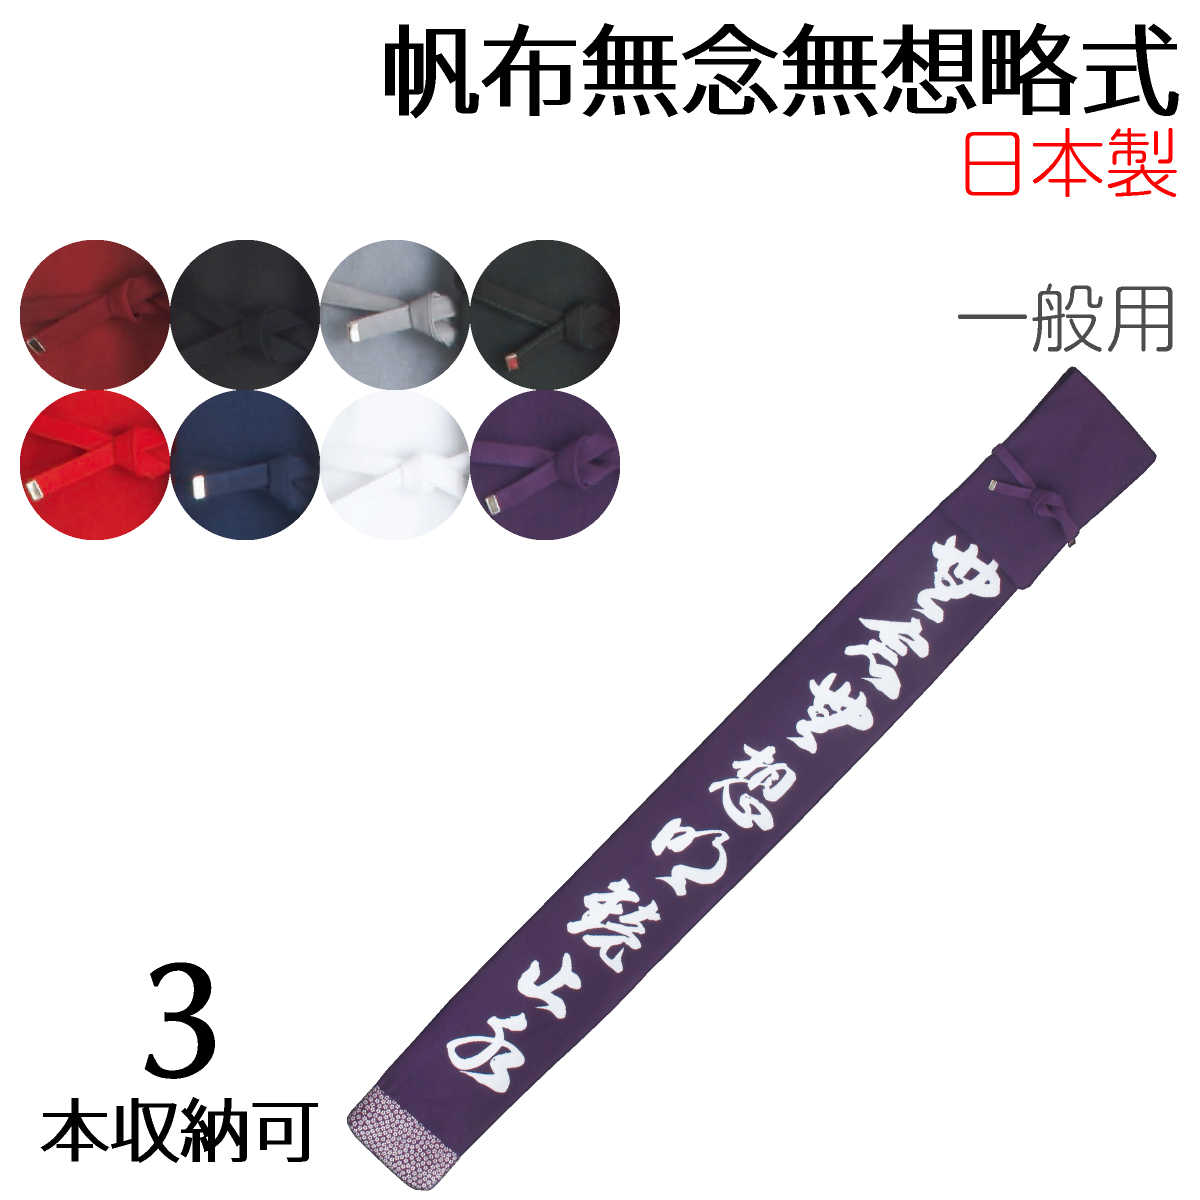 5☆大好評 日本製の竹刀バッグ 剣道の稽古に際の持ち運びに 竹刀袋 帆布無念無想略式 3本入8色 大特価 かっこいい